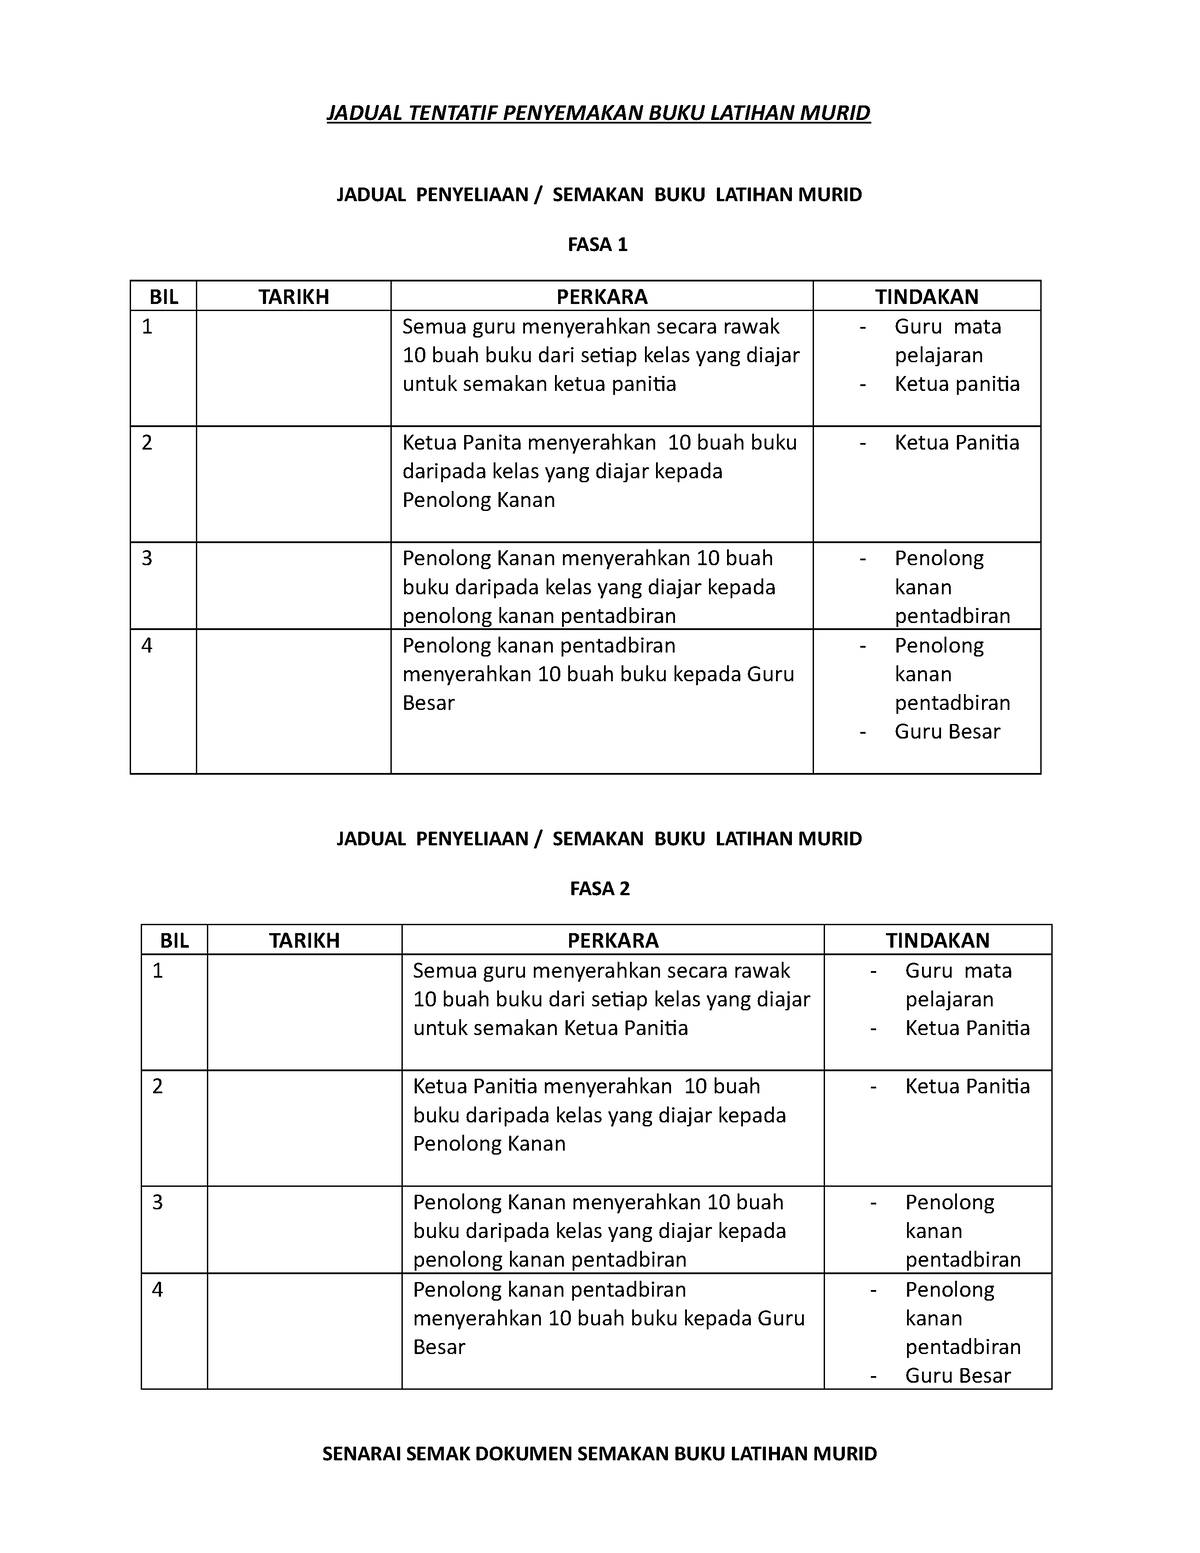 Jadual Semakan Buku Latihan Murid docx - CPA-Business - Ox - StuDocu